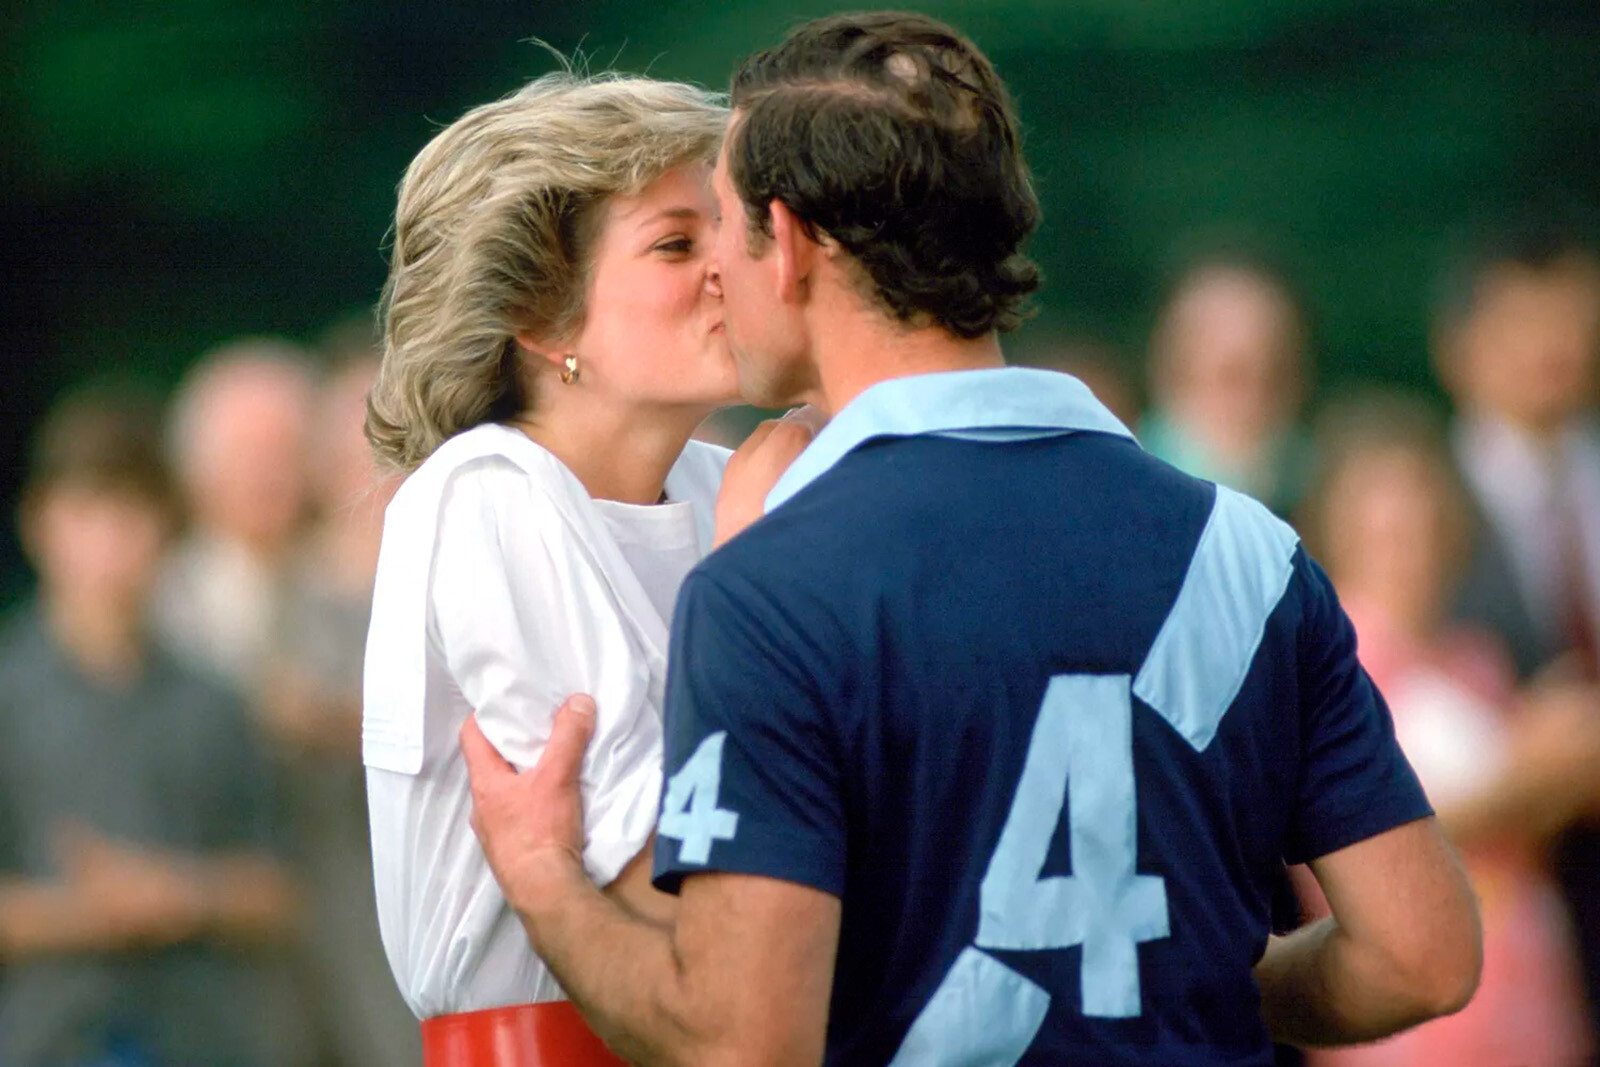 Принцесса Диана и принц Чарльз целуются на поле для поло в июне 1985 года